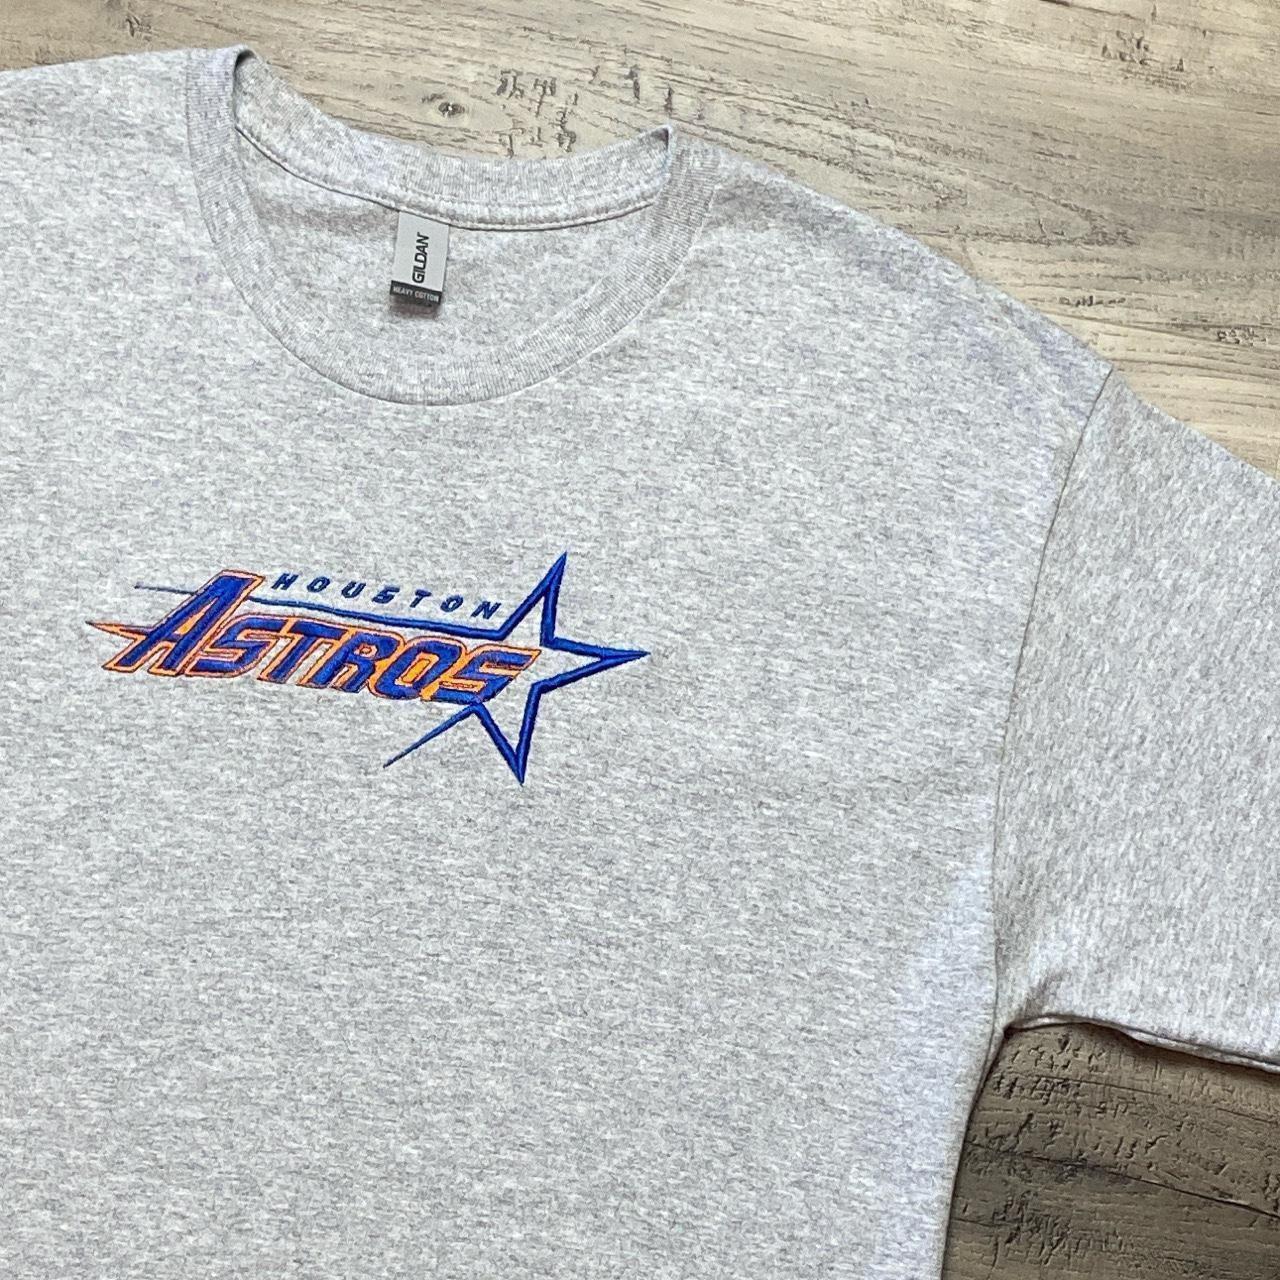 Astros-Cotton T-shirt